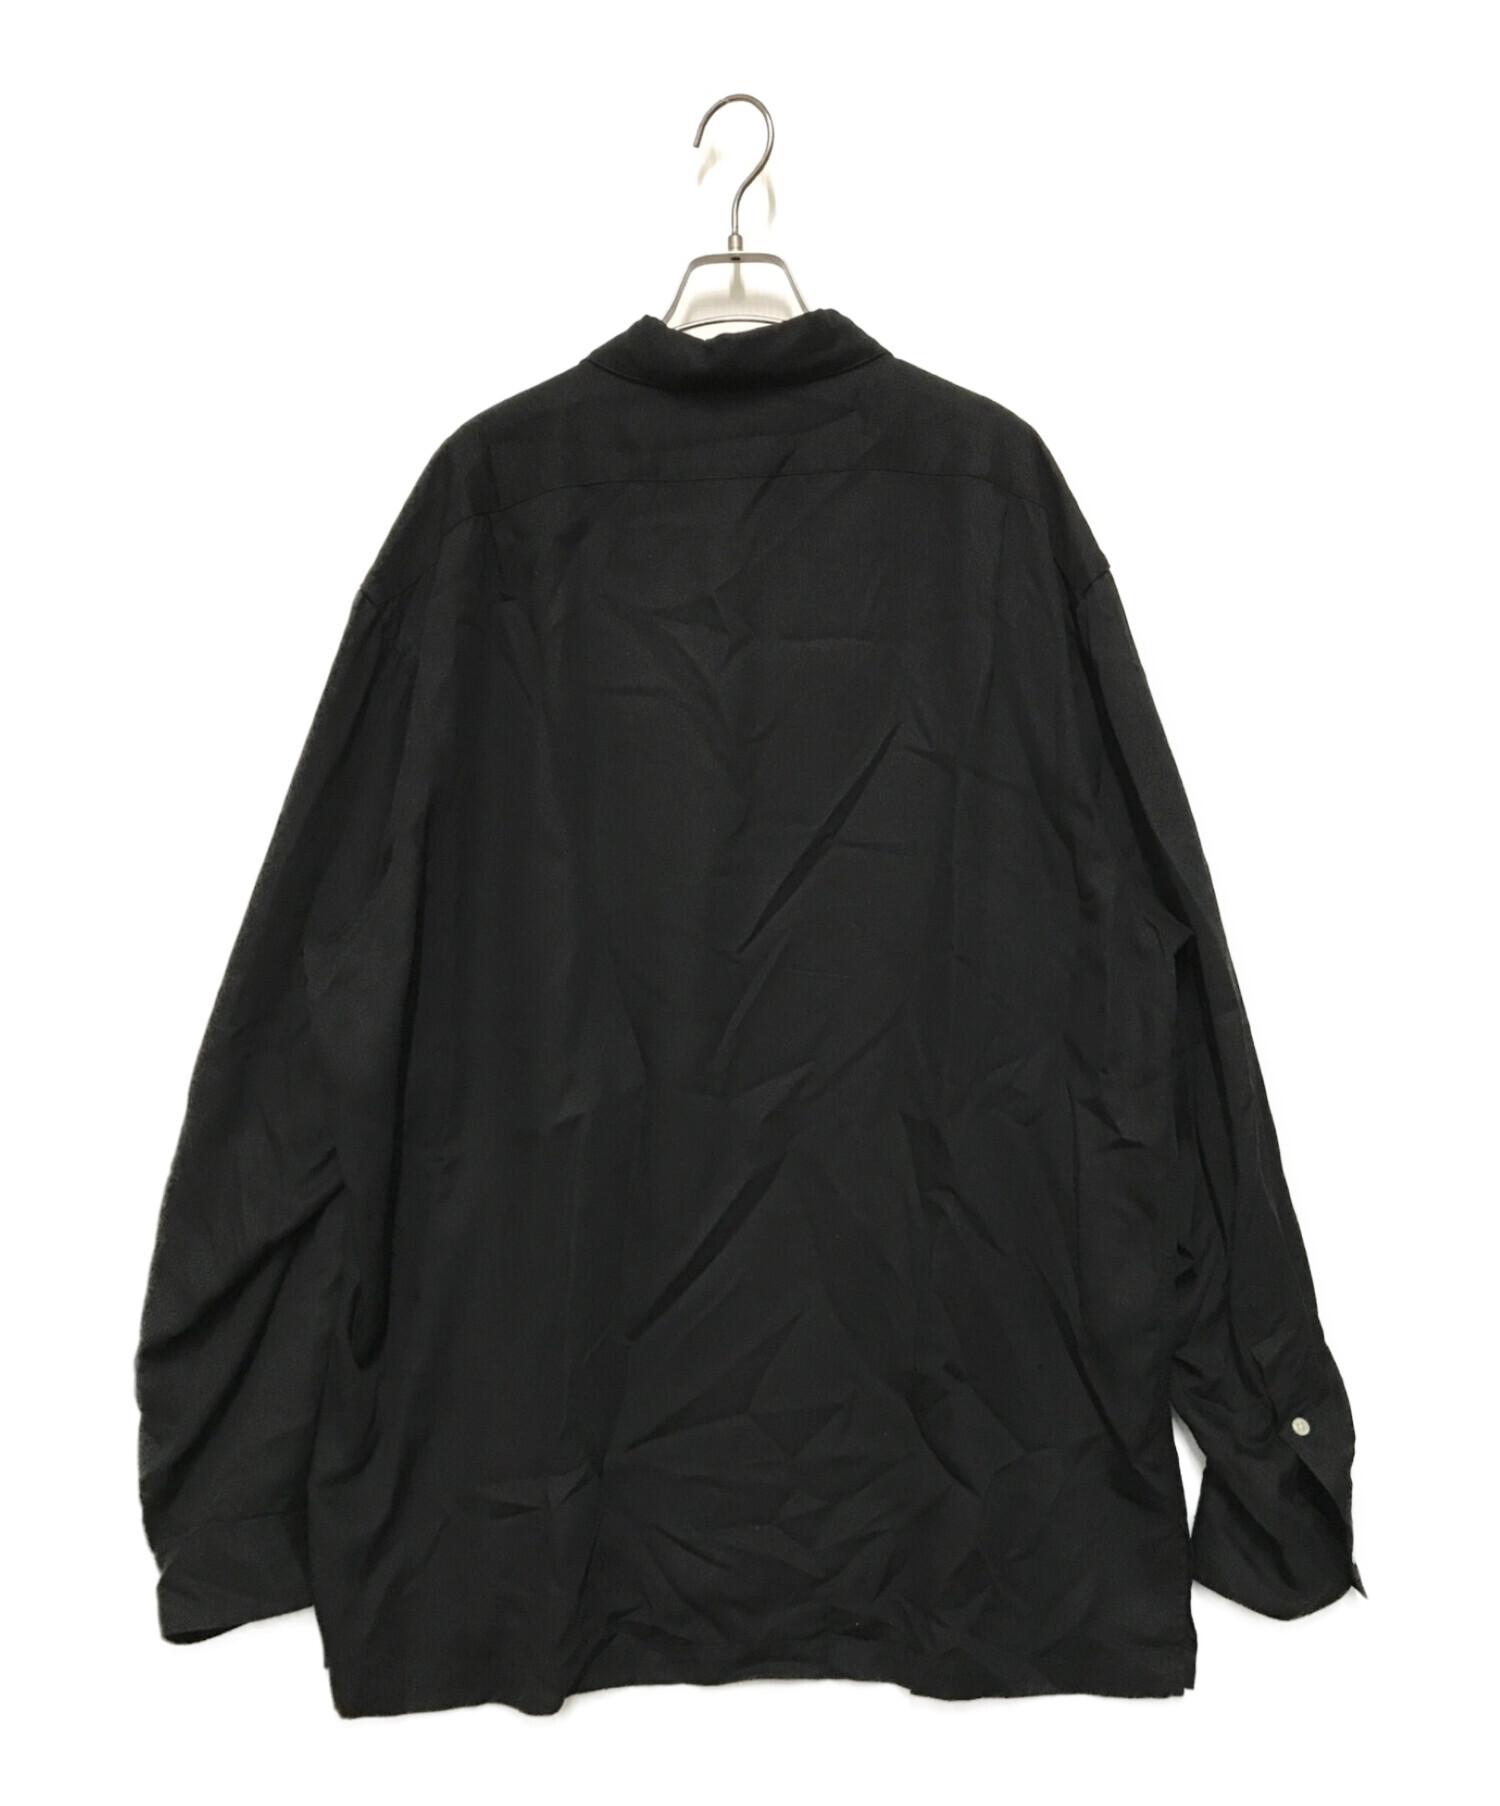 POLO RALPH LAUREN (ポロ・ラルフローレン) レーヨンオープンカラーシャツ ブラック サイズ:XL